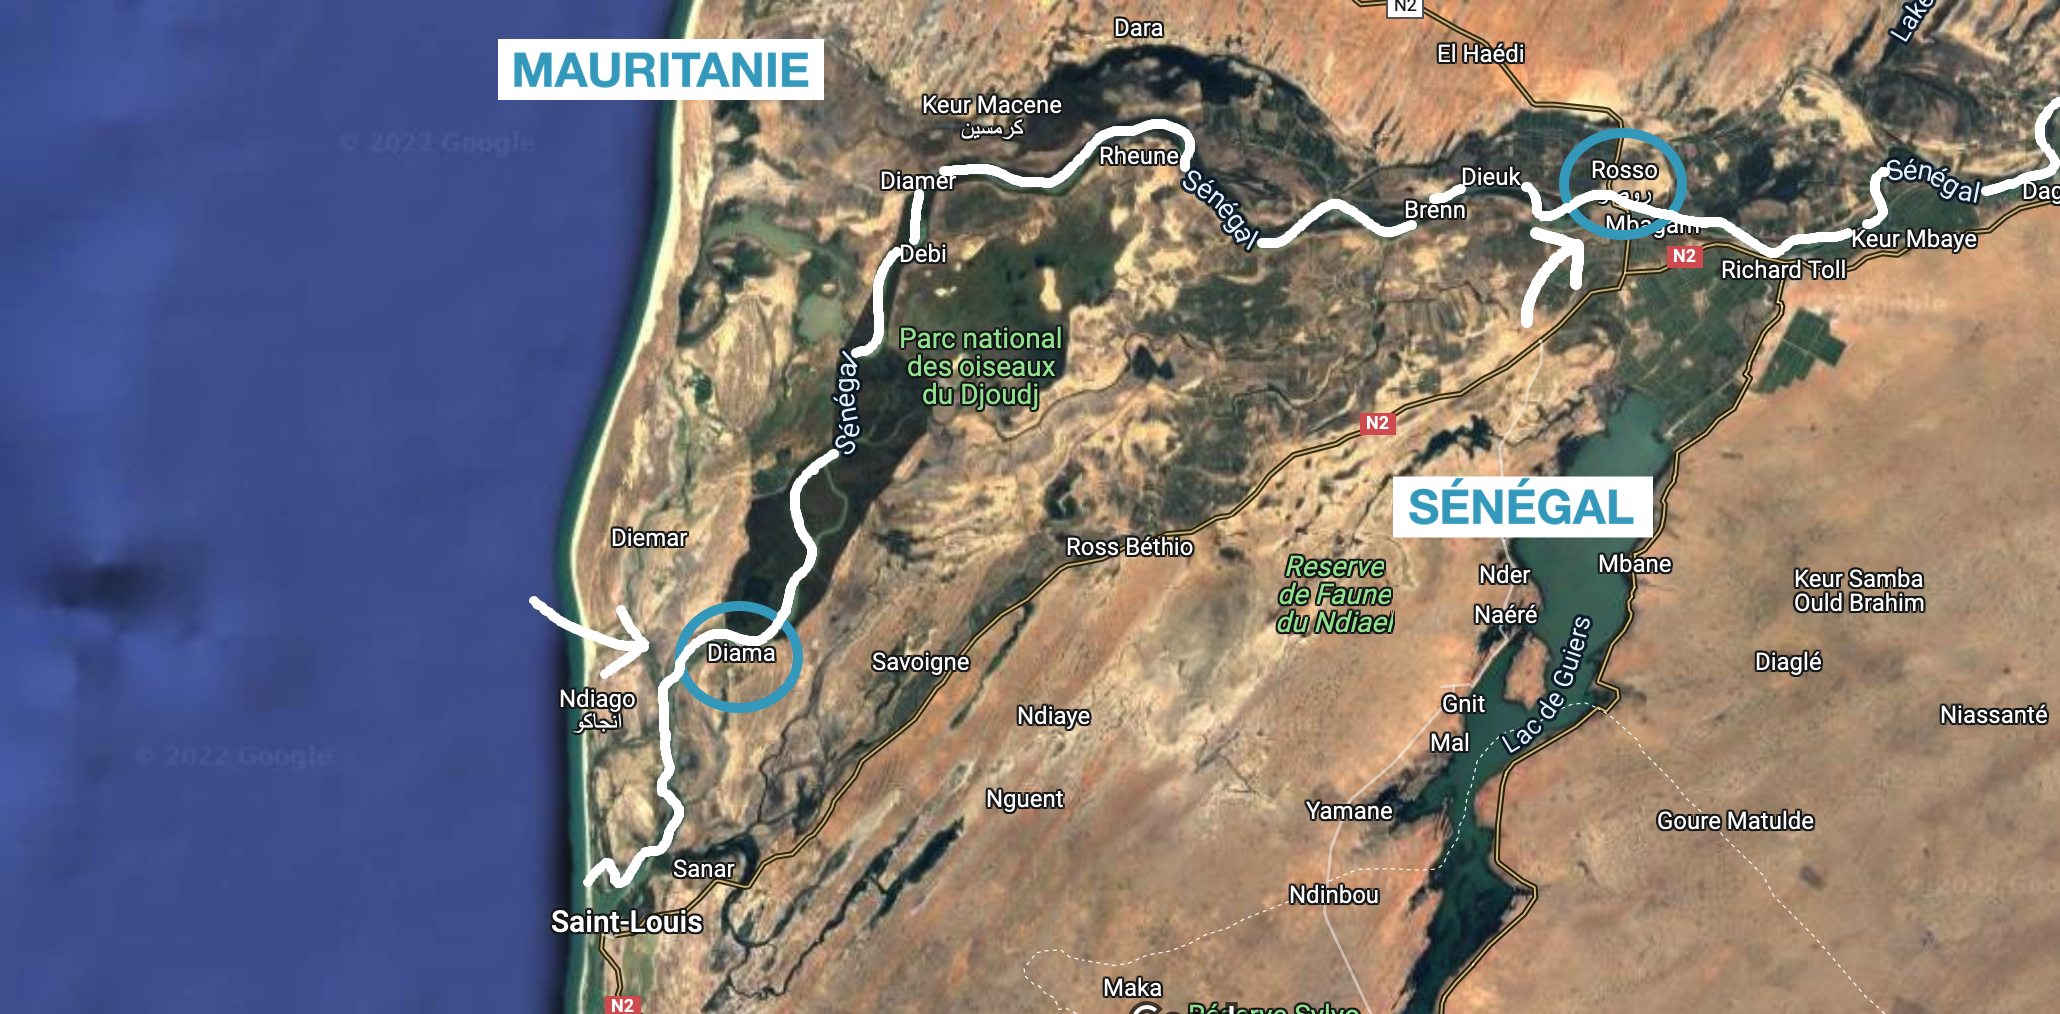 frontière senegal mauritanie diama rosso